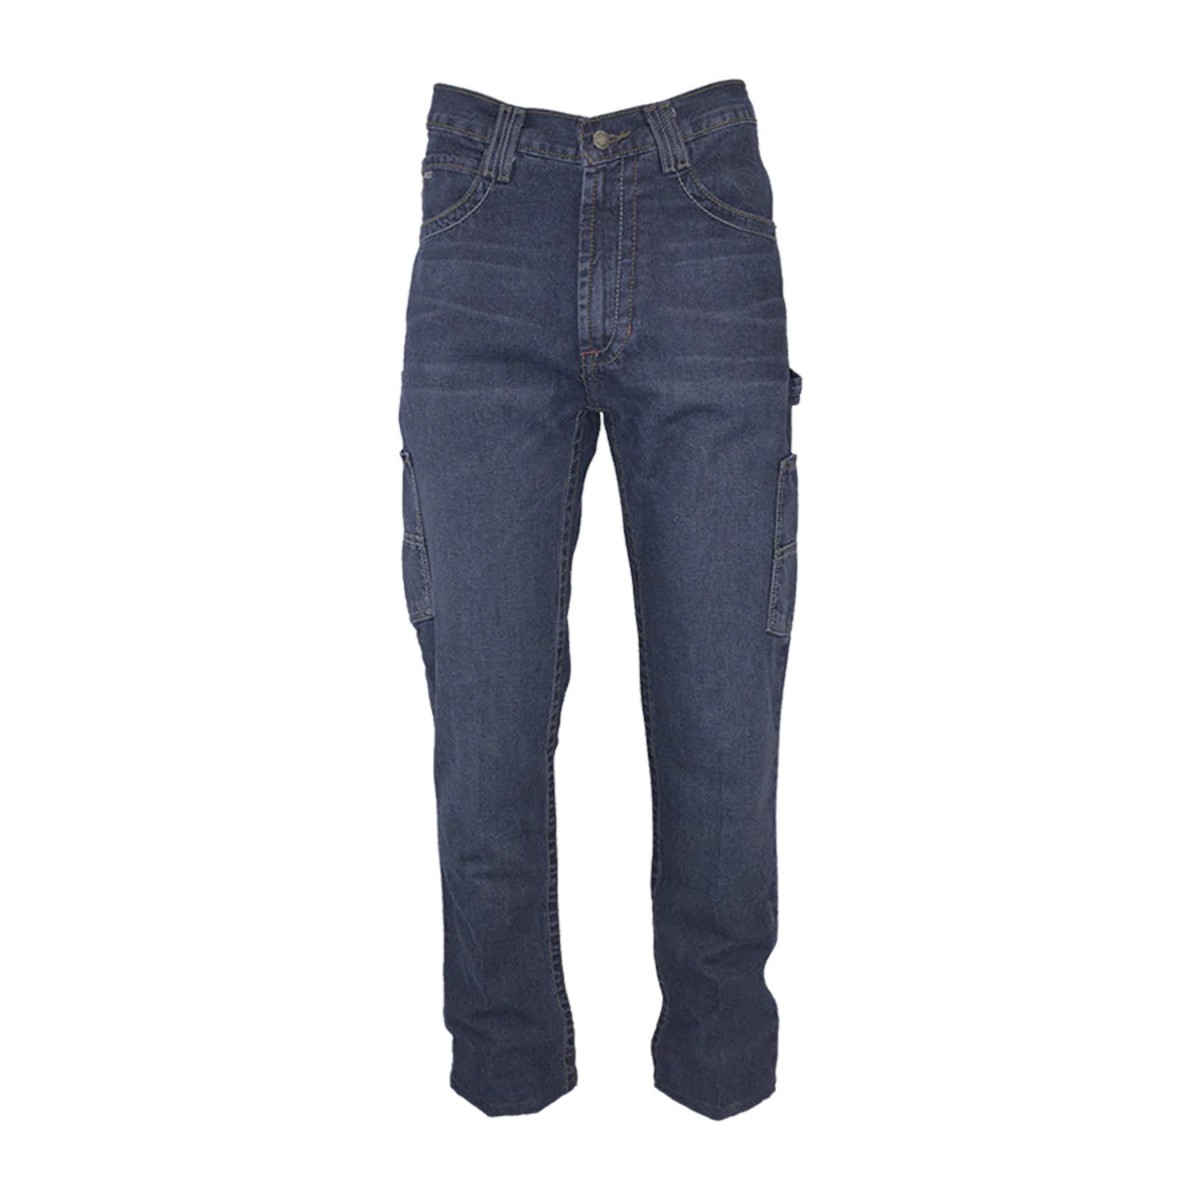 LAPCO 10 oz Utility Jeans in Denim